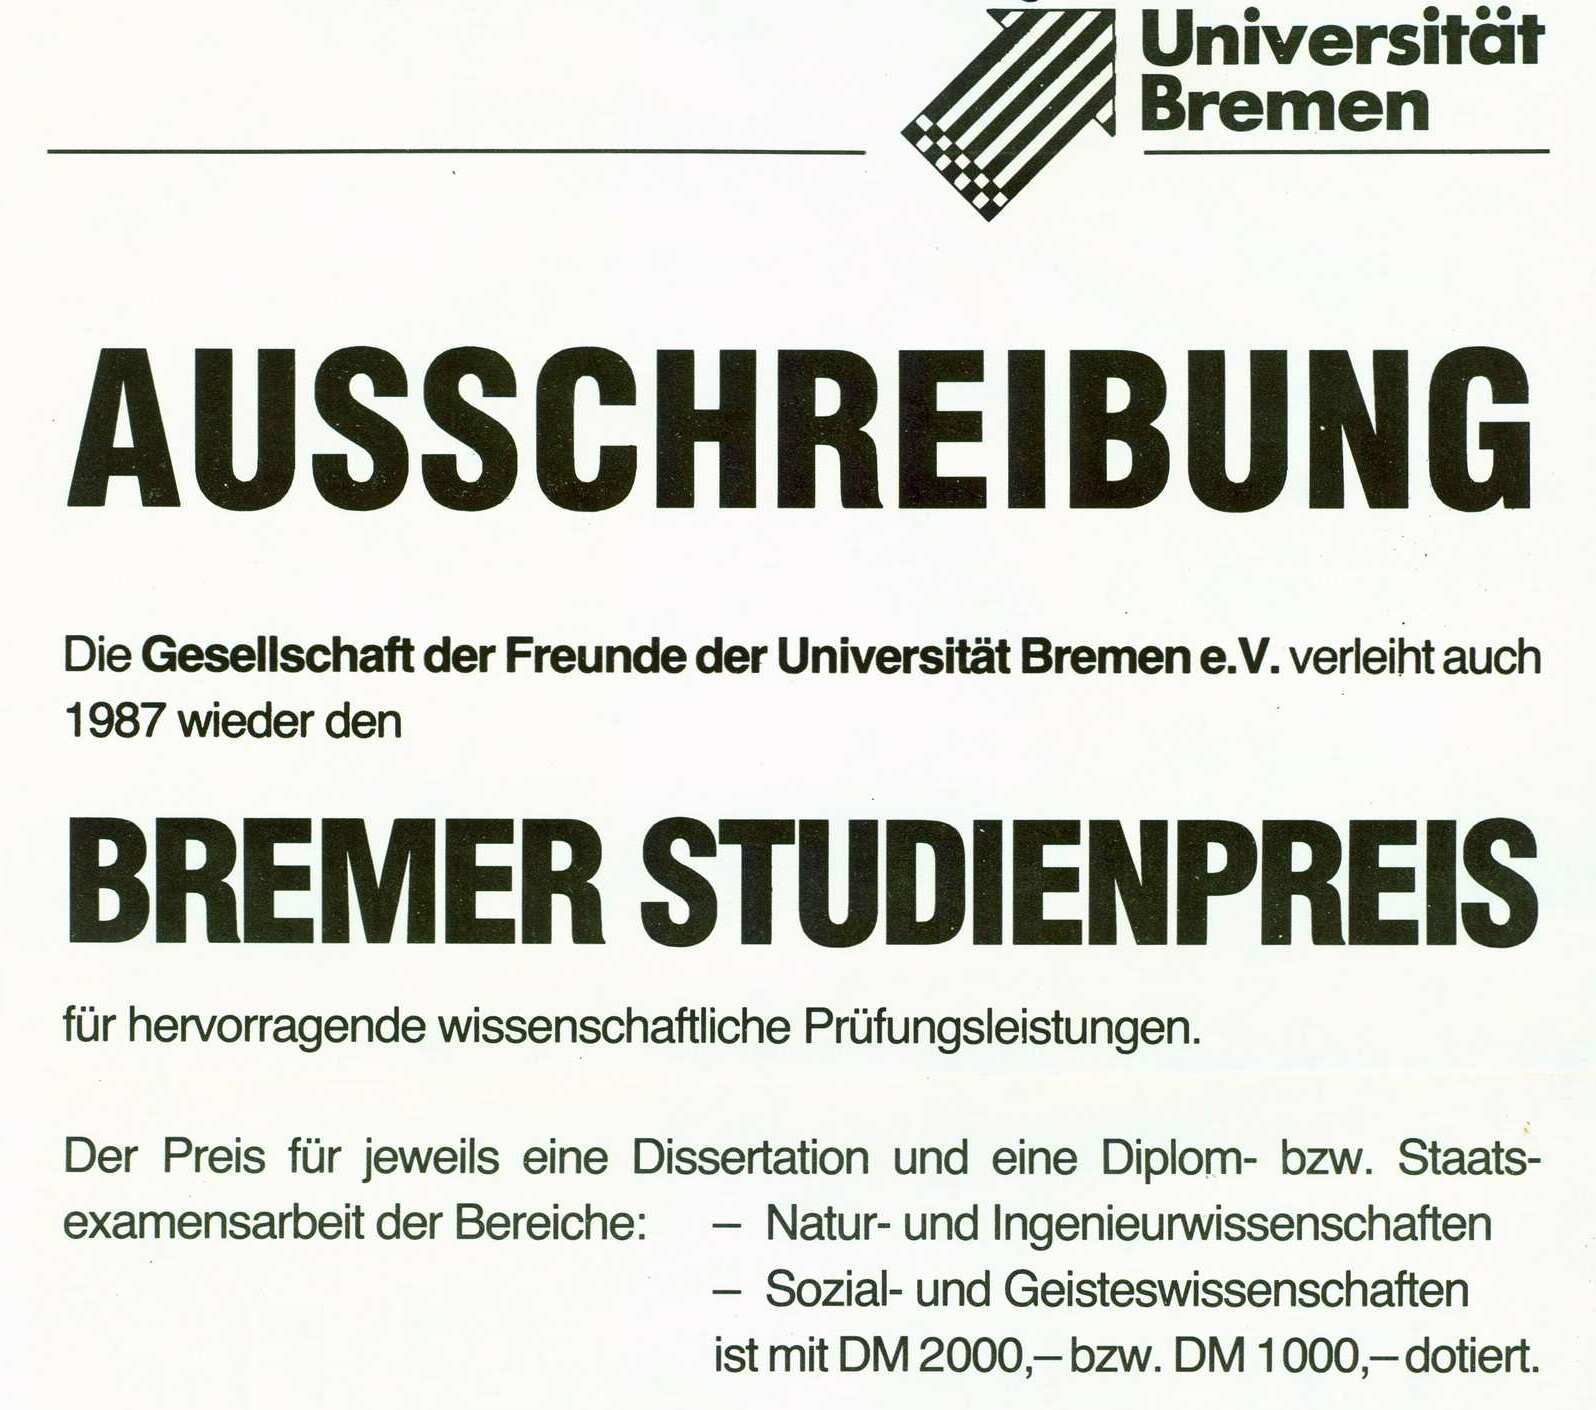 Ein Plakat mit der Aufschrift „Ausschreibung. Die Gesellschaft der Freunde der Universität Bremen e.V. verleiht auch 1987 wieder den Bremer Studienpreis für hervorragende wissenschaftliche Prüfungsleistungen“ fordert zur Bewerbung um den Studienpreis mit